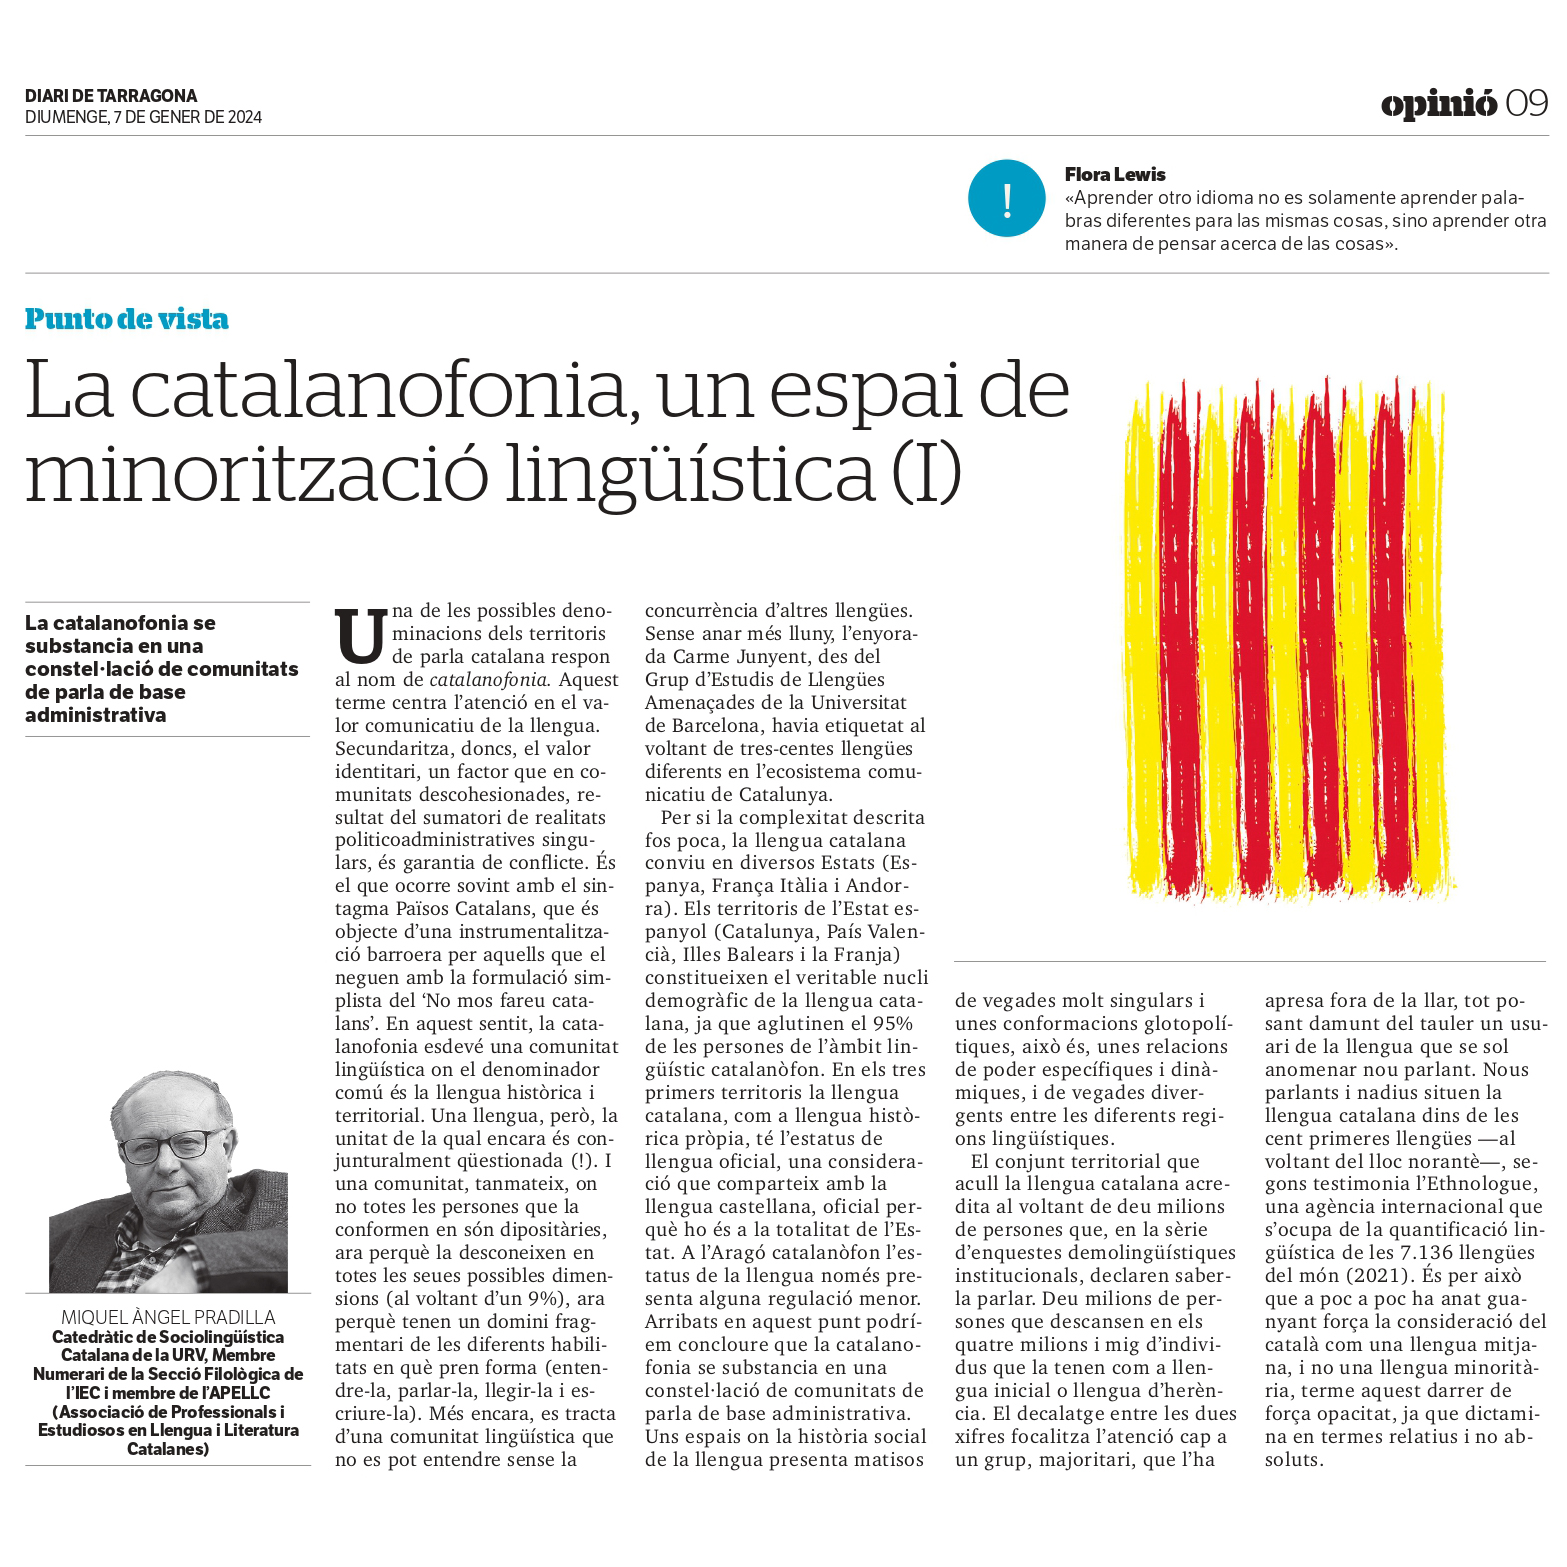 Article “La catalanofonia, un espai de minorització lingüística” de Miquel Àngel Pradilla Cardona